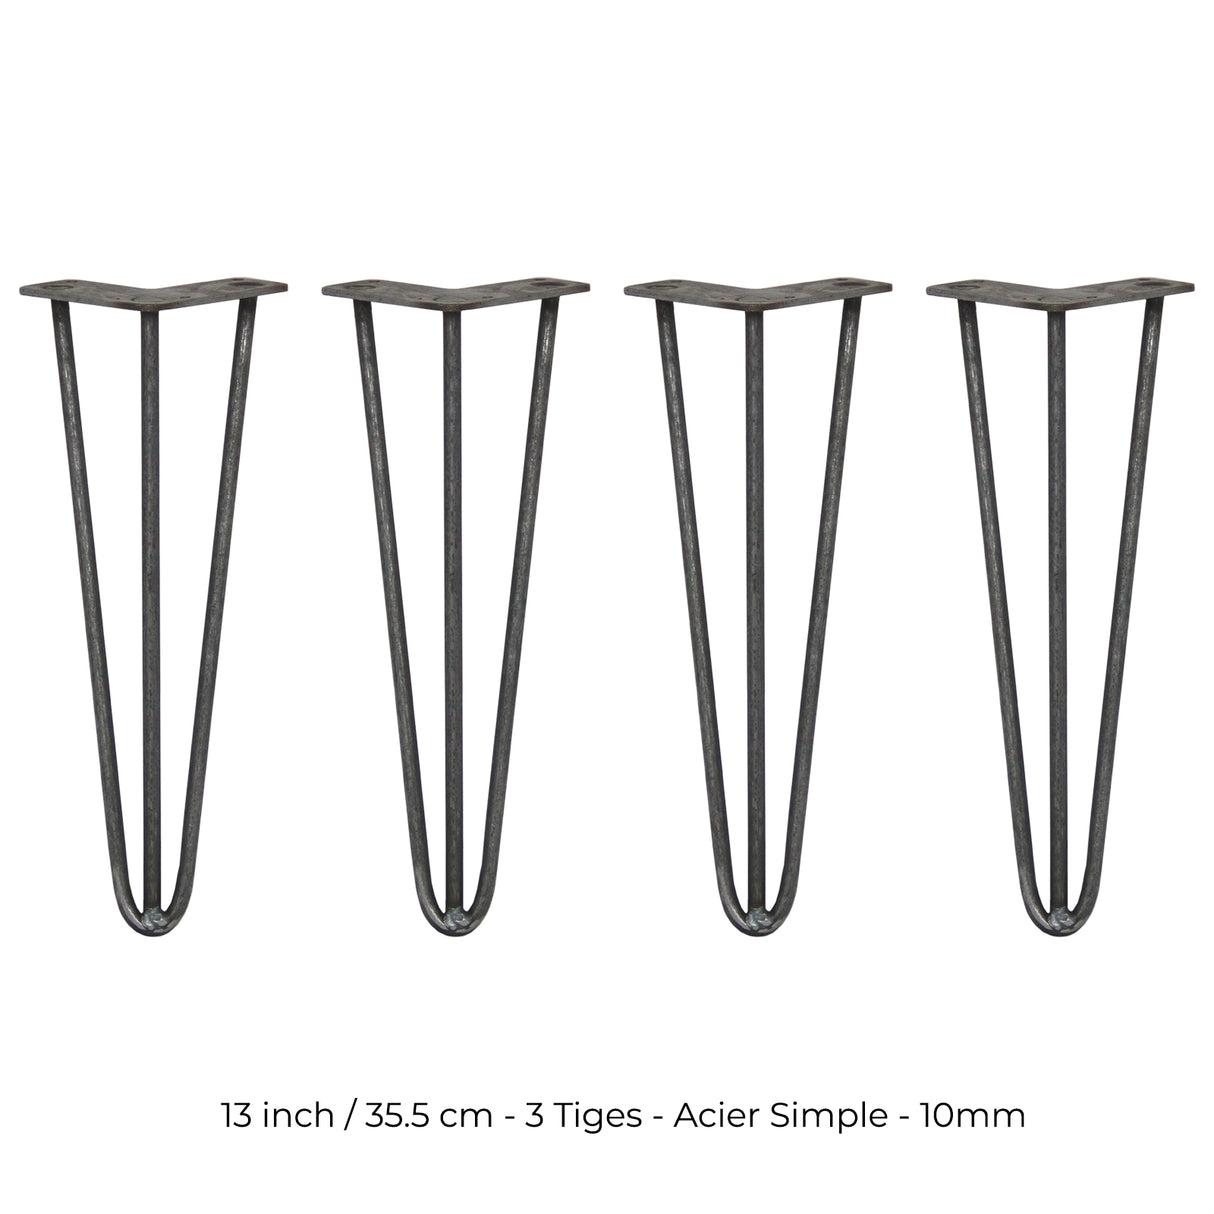 4 Pieds de Table en Epingle à Cheveux - 35,5cm - 3 Tiges - 10mm